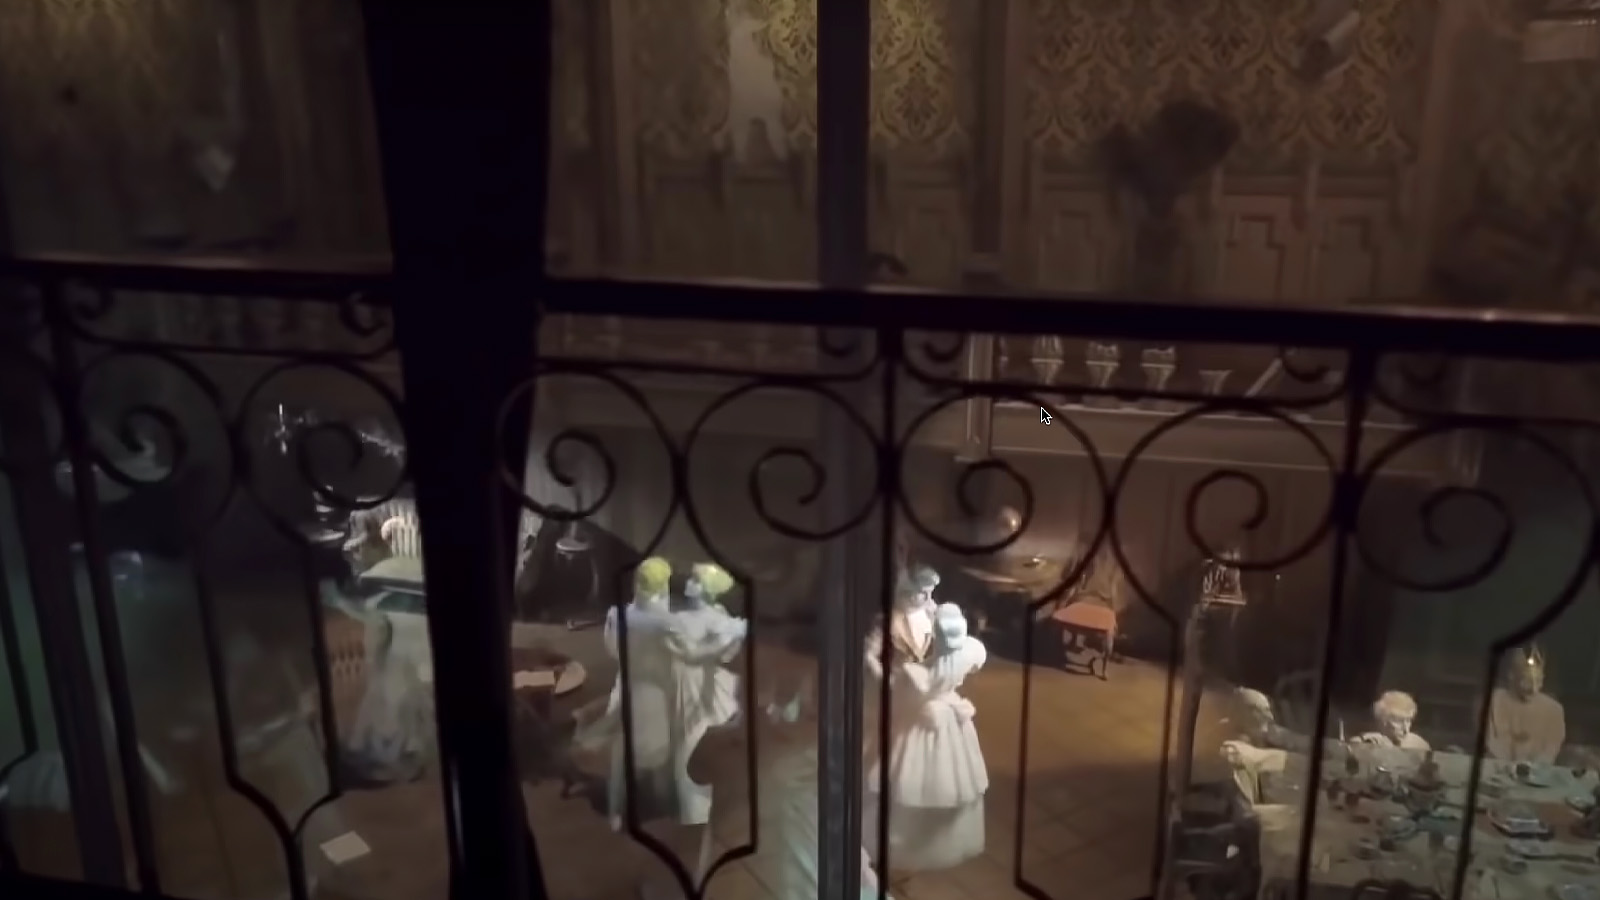 Disneyland Haunted Mansion ghosts